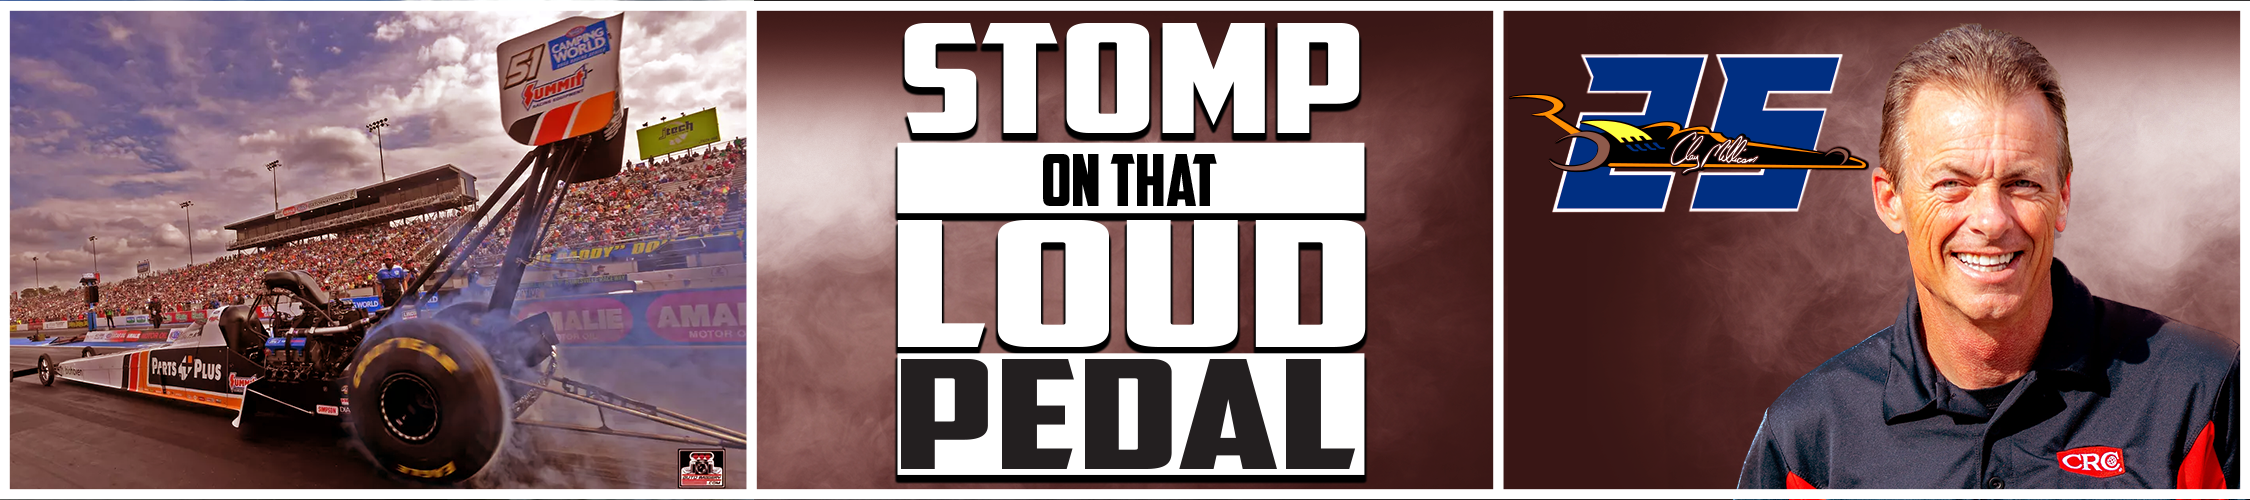 Stomp On That Loud Pedal Merch